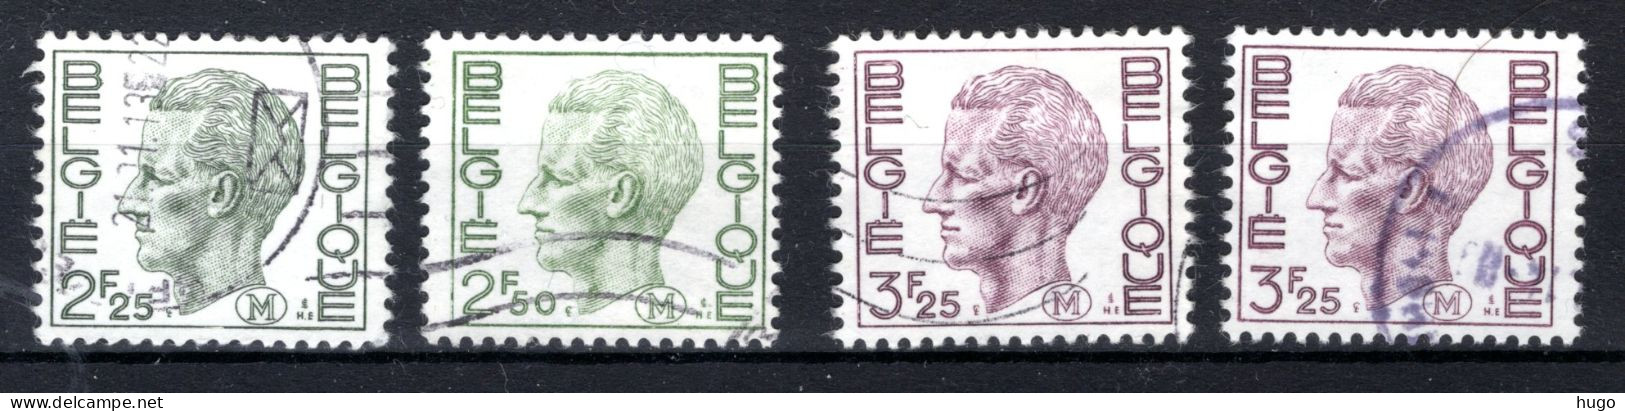 M4/5° Gestempeld 1971-1975 - Koning Boudewijn - Stamps [M]